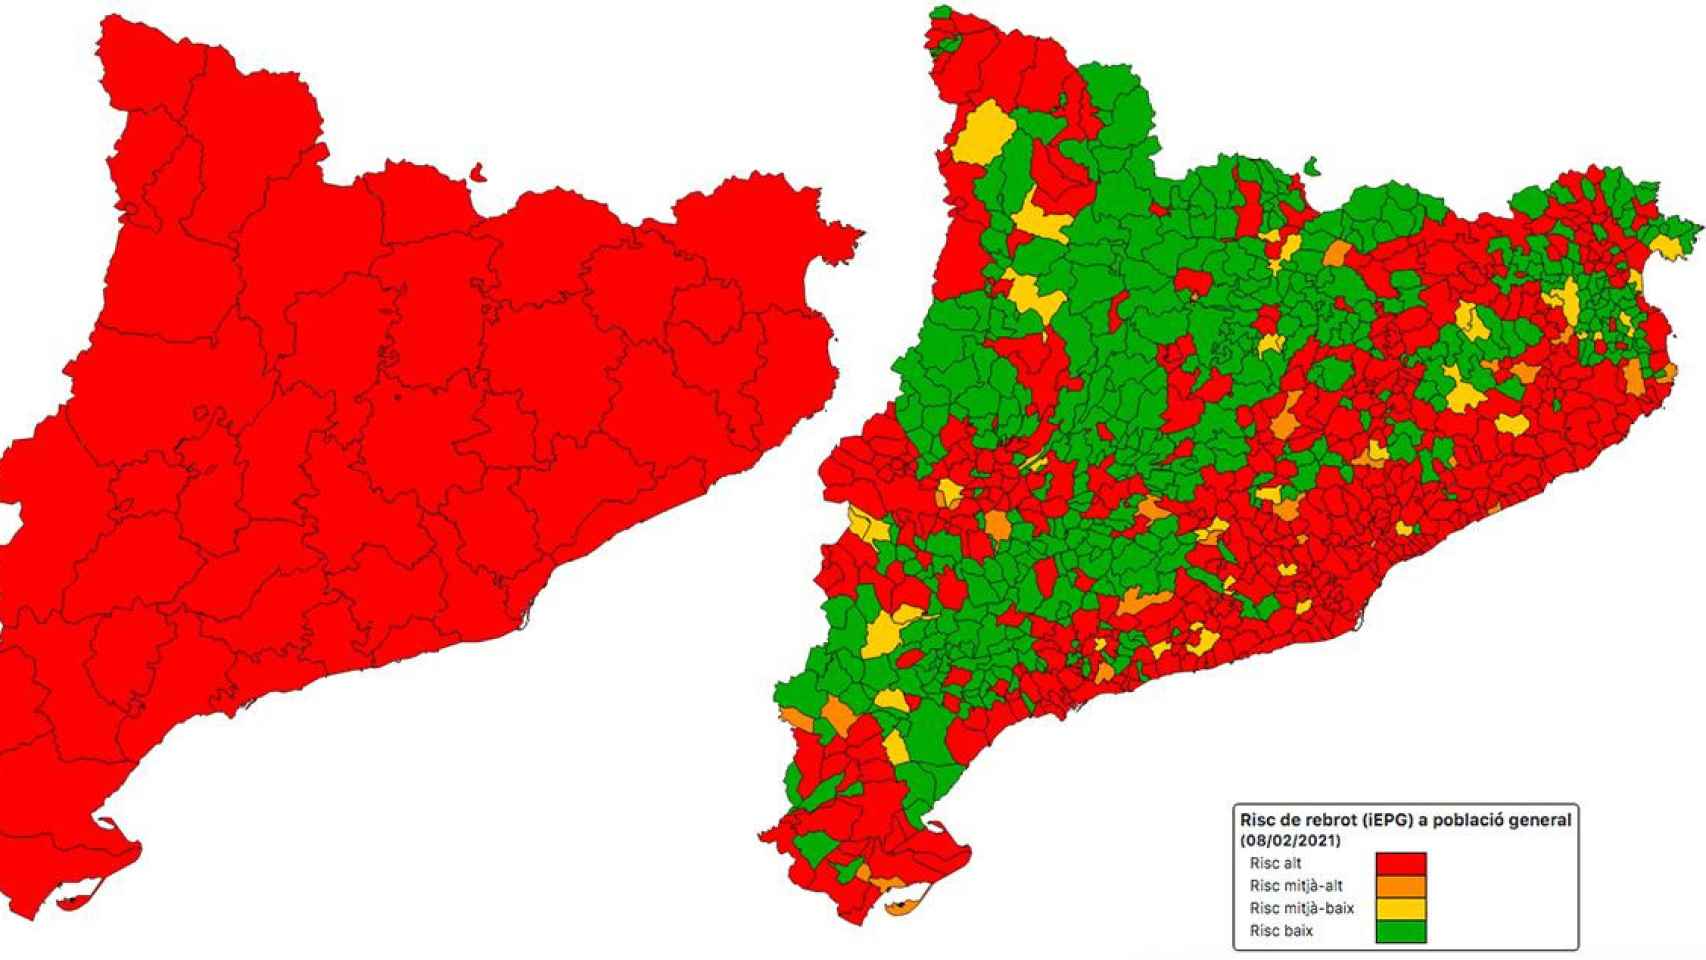 El riesgo de rebrote en las comarcas y los municipios de Cataluña a 8 de febrero del 2021 / DADESCOVID